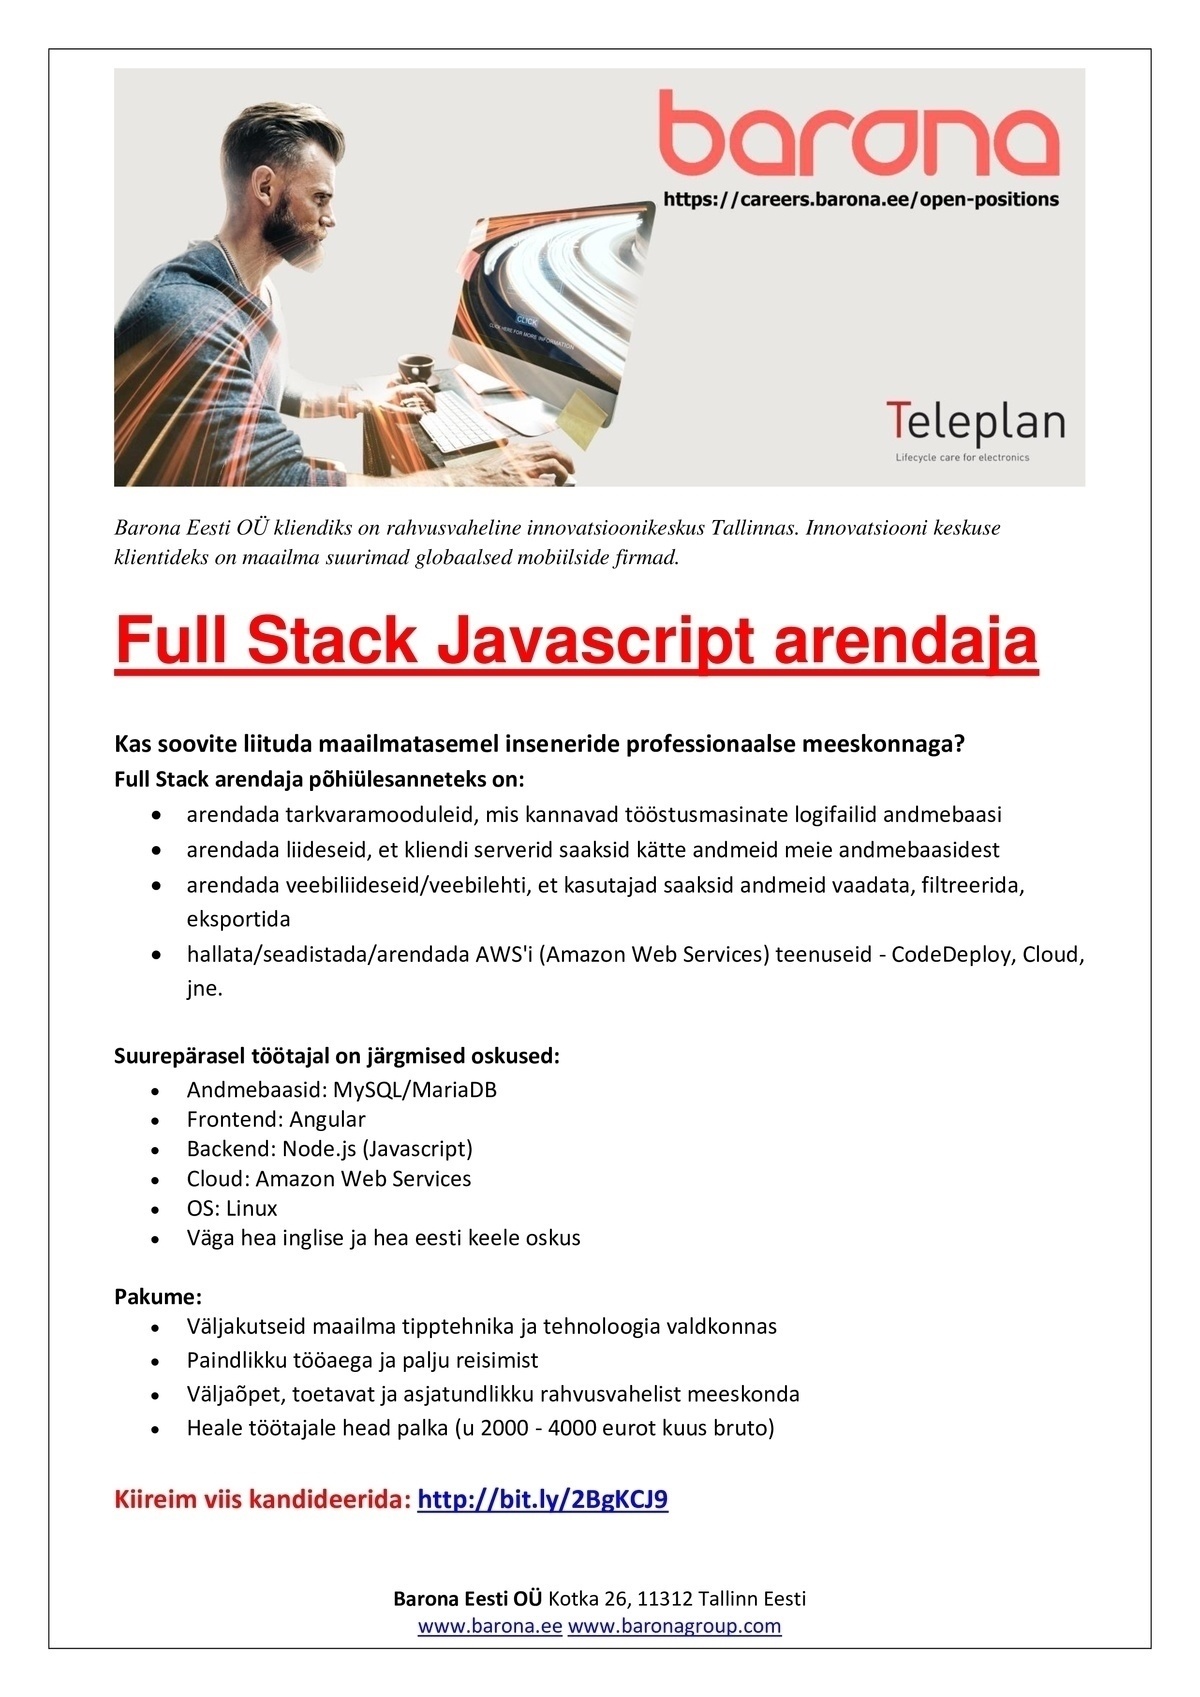 Barona Eesti OÜ Full Stack Javascript arendaja